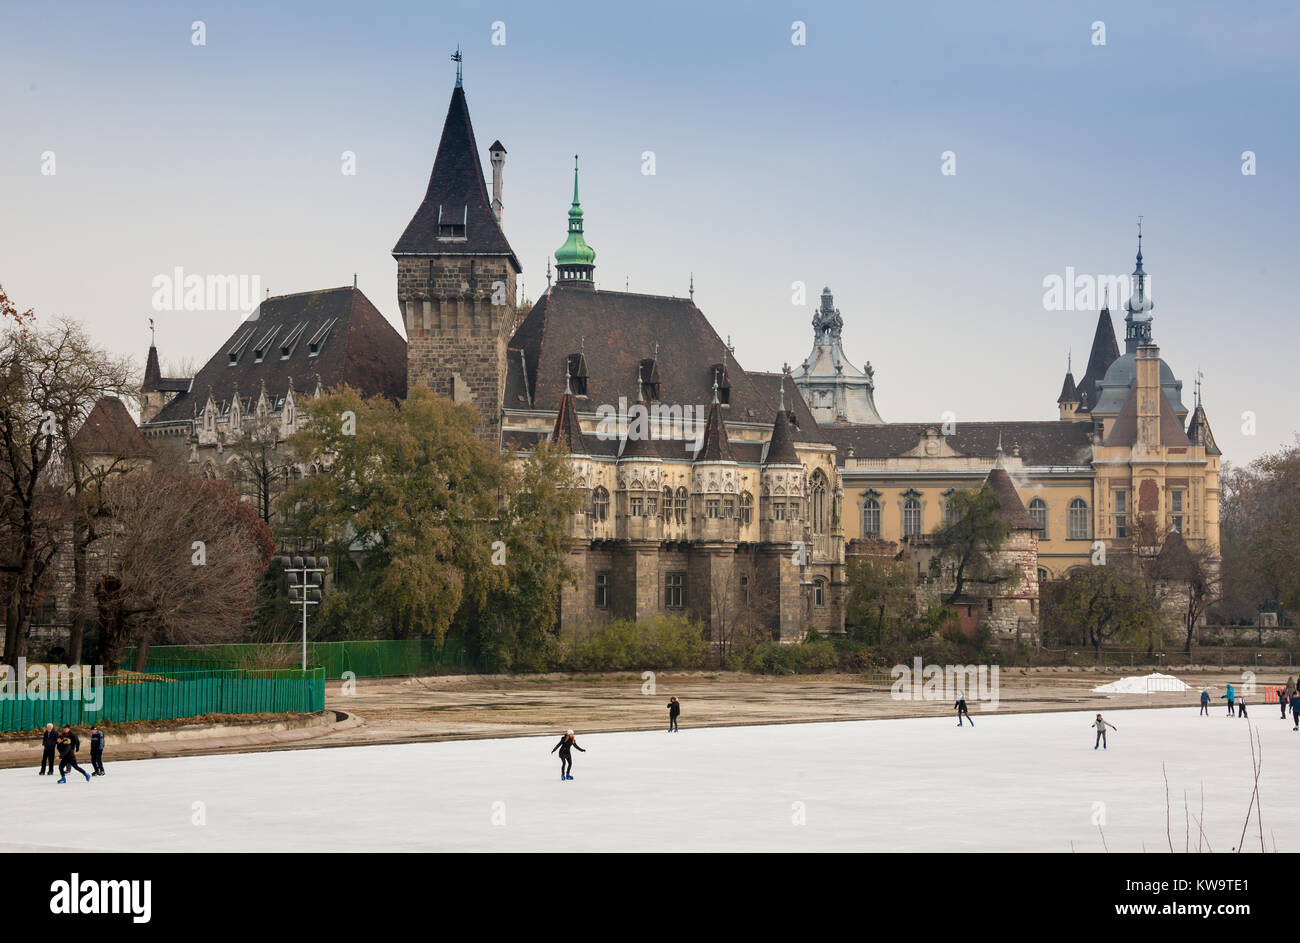 BUDAPEST, Ungarn - 17. Dezember 2017: Die Vajdahunyad Burg und dem Eisstadion der Stadt Park in Ungarisch: varosliget sind an Hosok tere am Dezember 17, 2017 in Budapest, Hunga Stockfoto